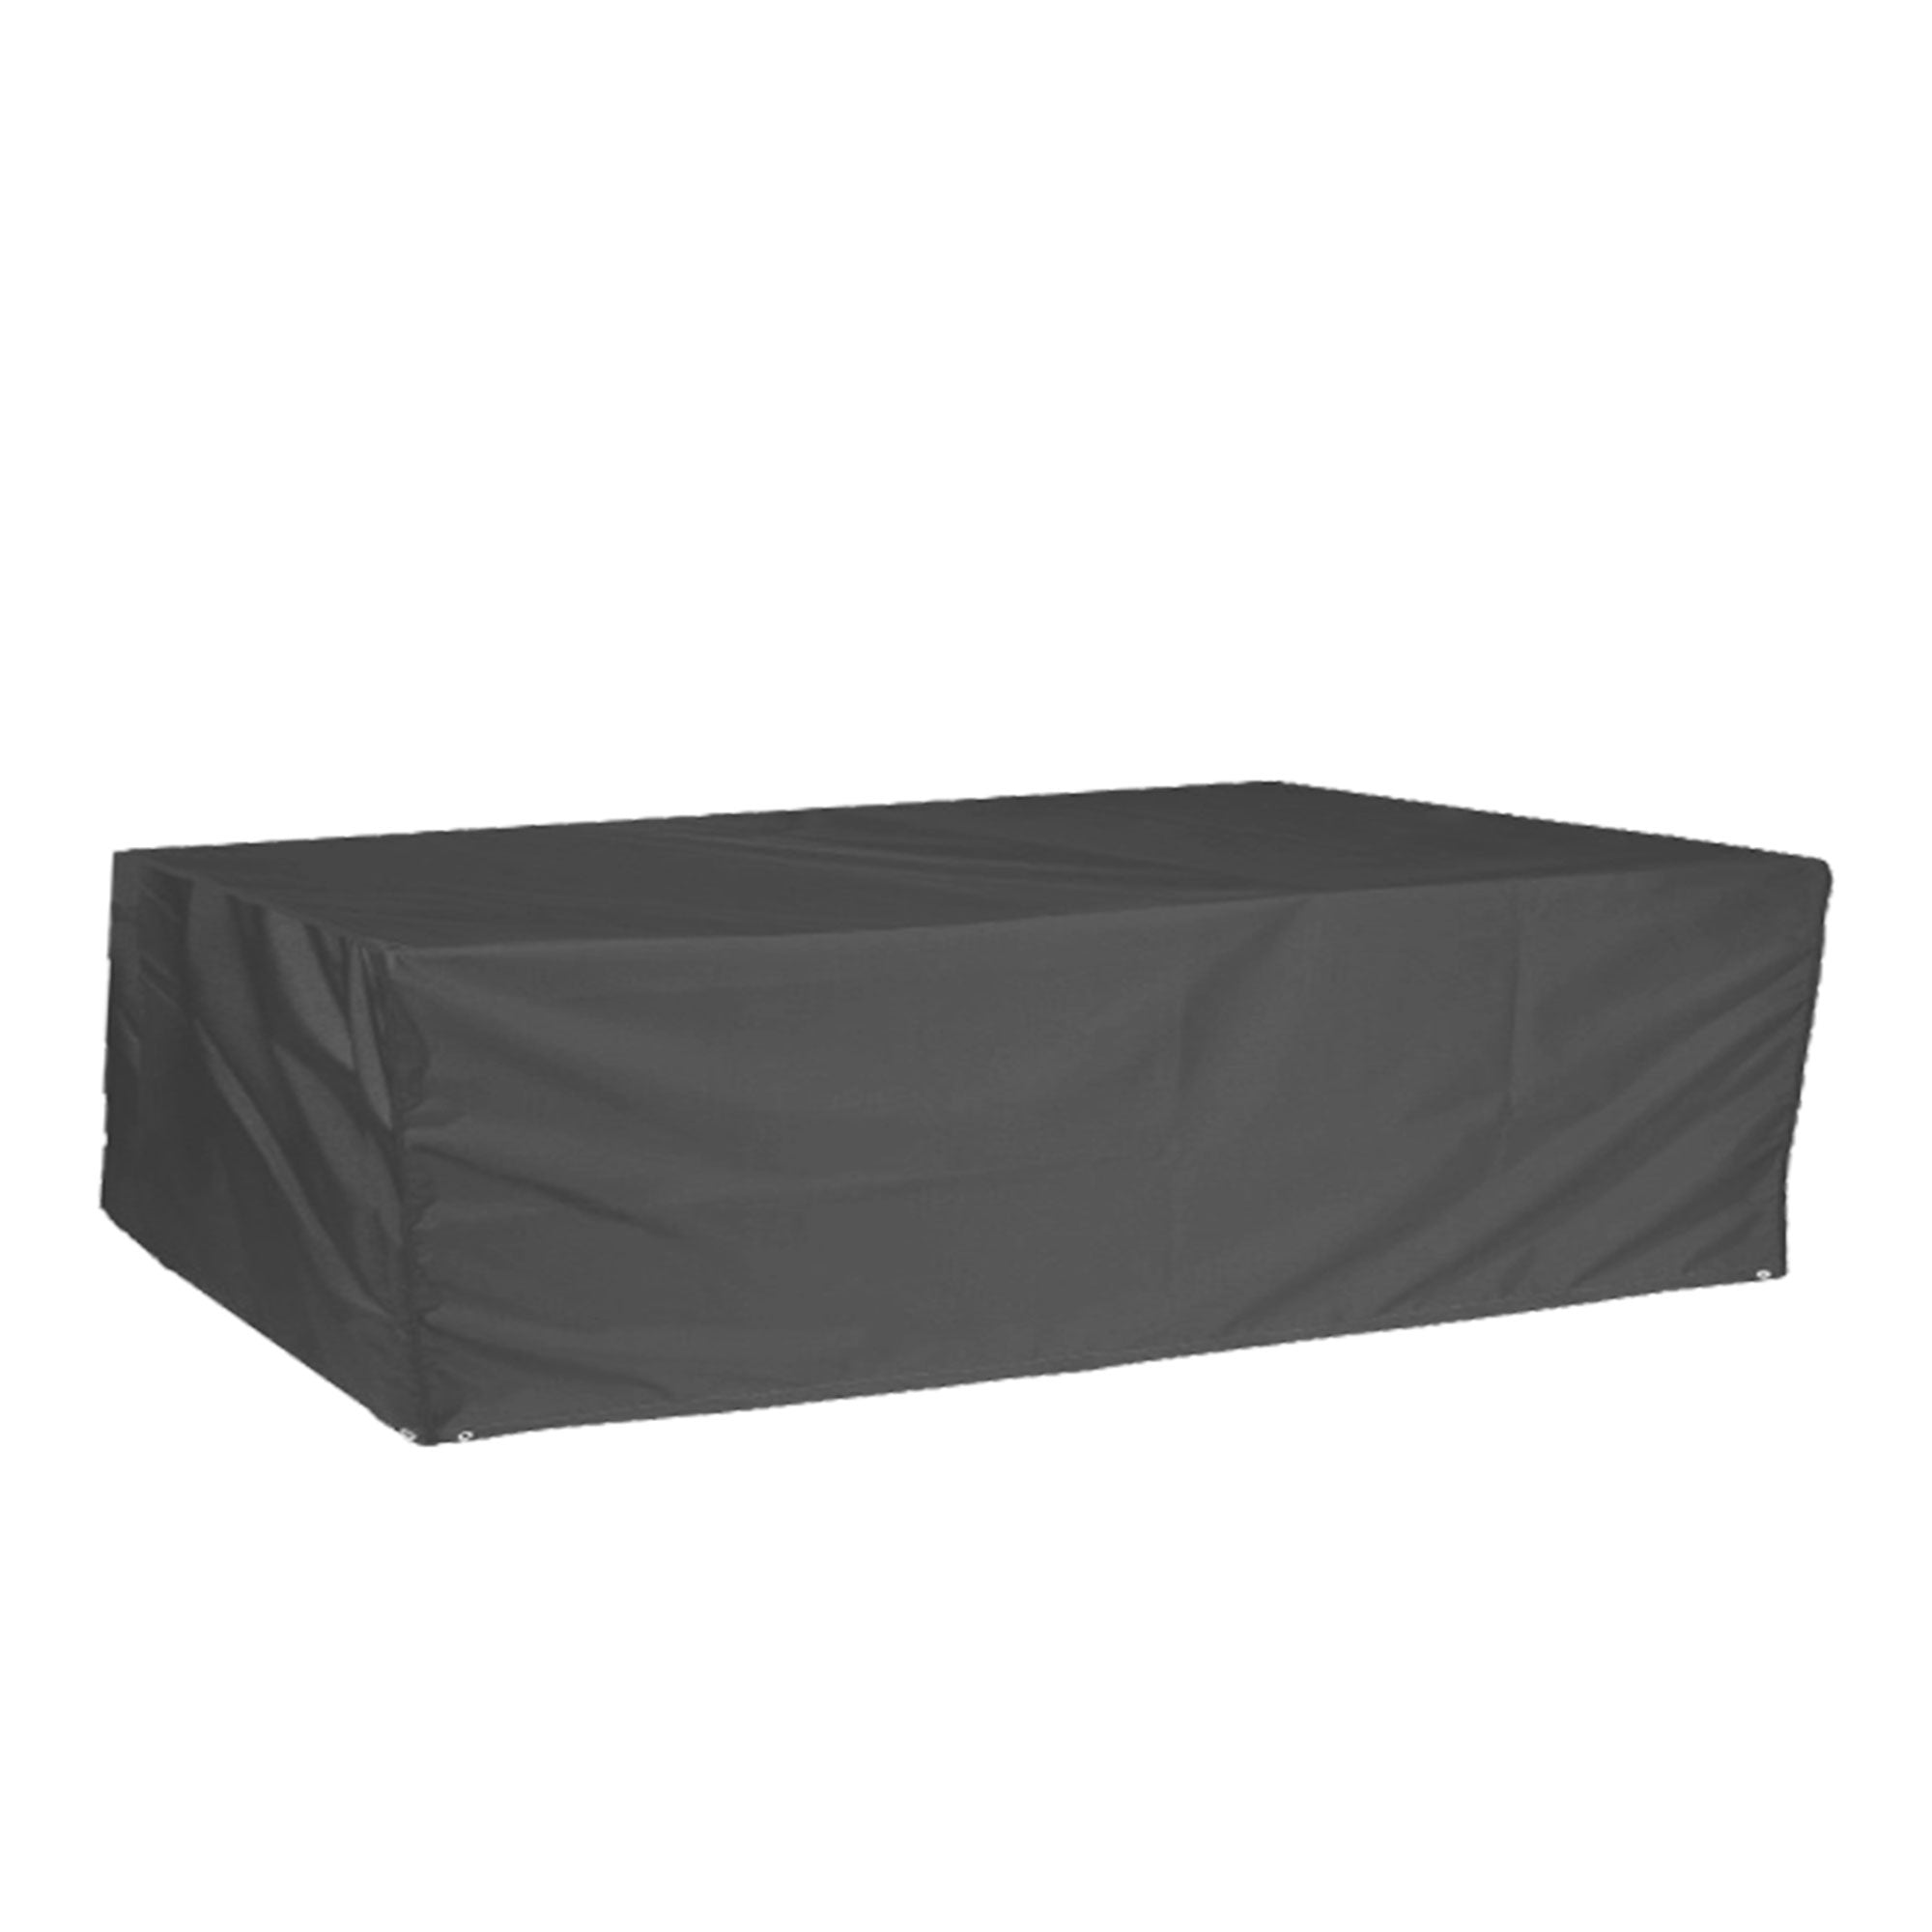 Premium Furniture Covers - Modular Corner Sofa & Dining Set Cover Storm Black 300 x 300cm